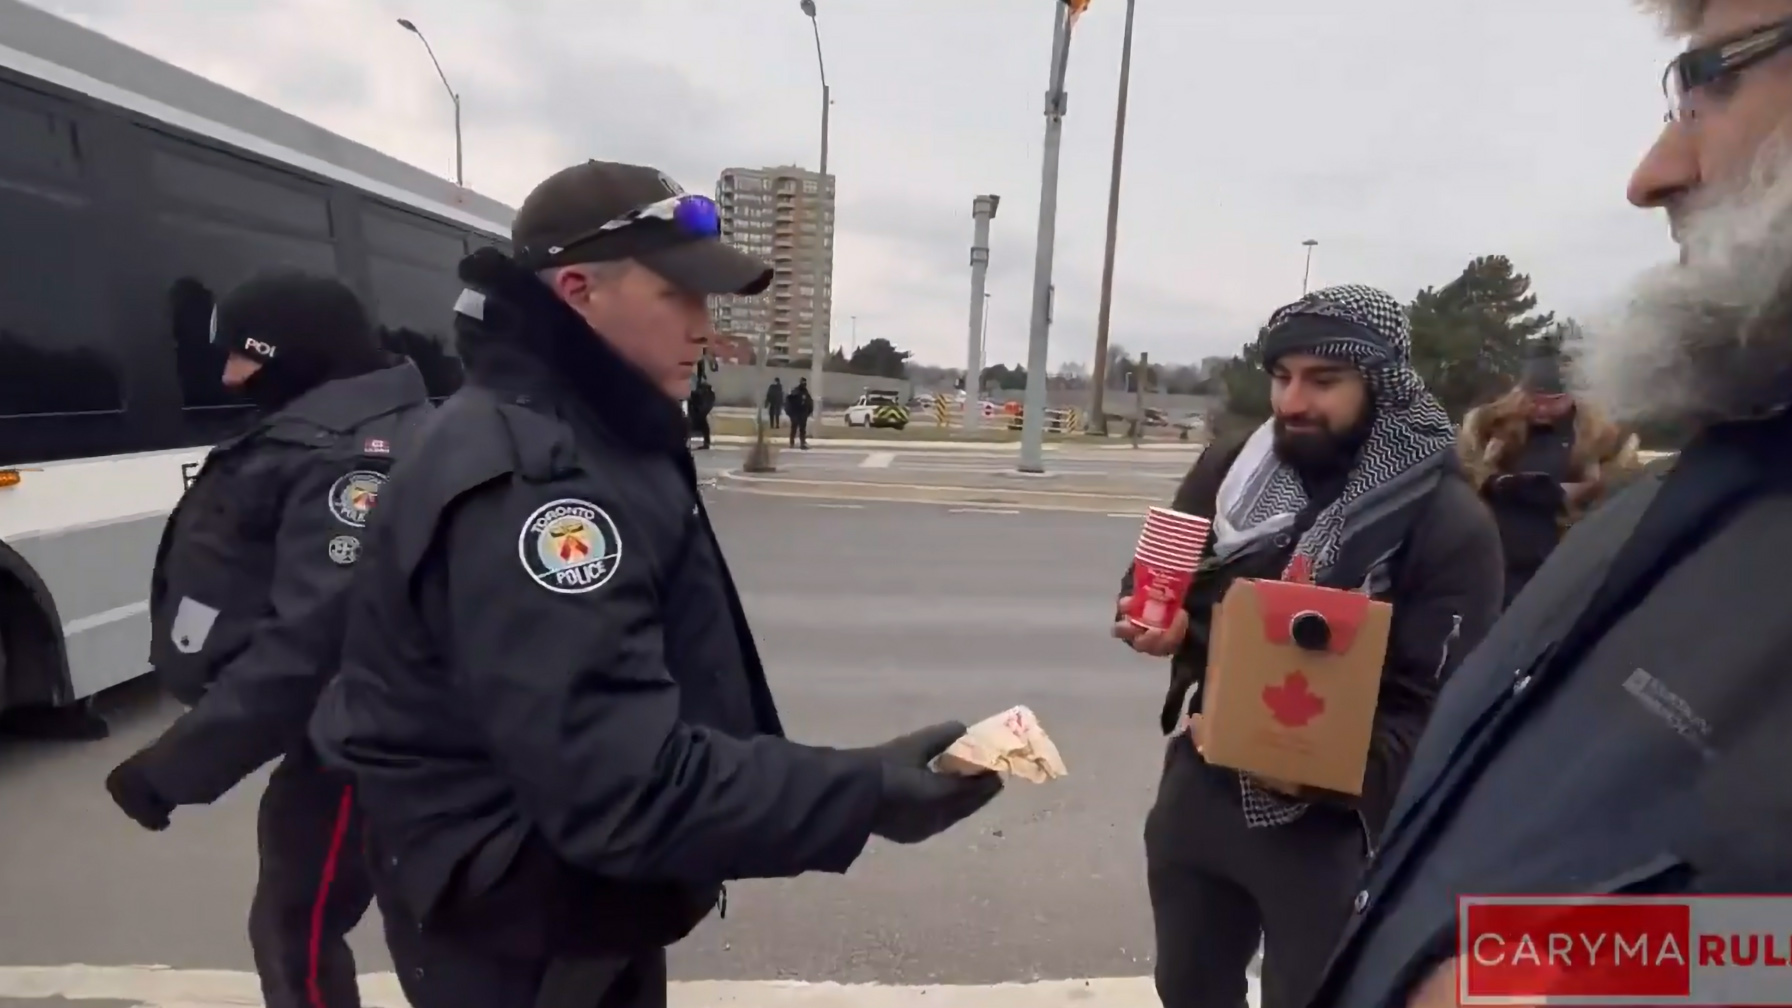 多伦多警察局长道歉，要求调查，因为视频显示警官给予支持巴勒斯坦示威者送咖啡